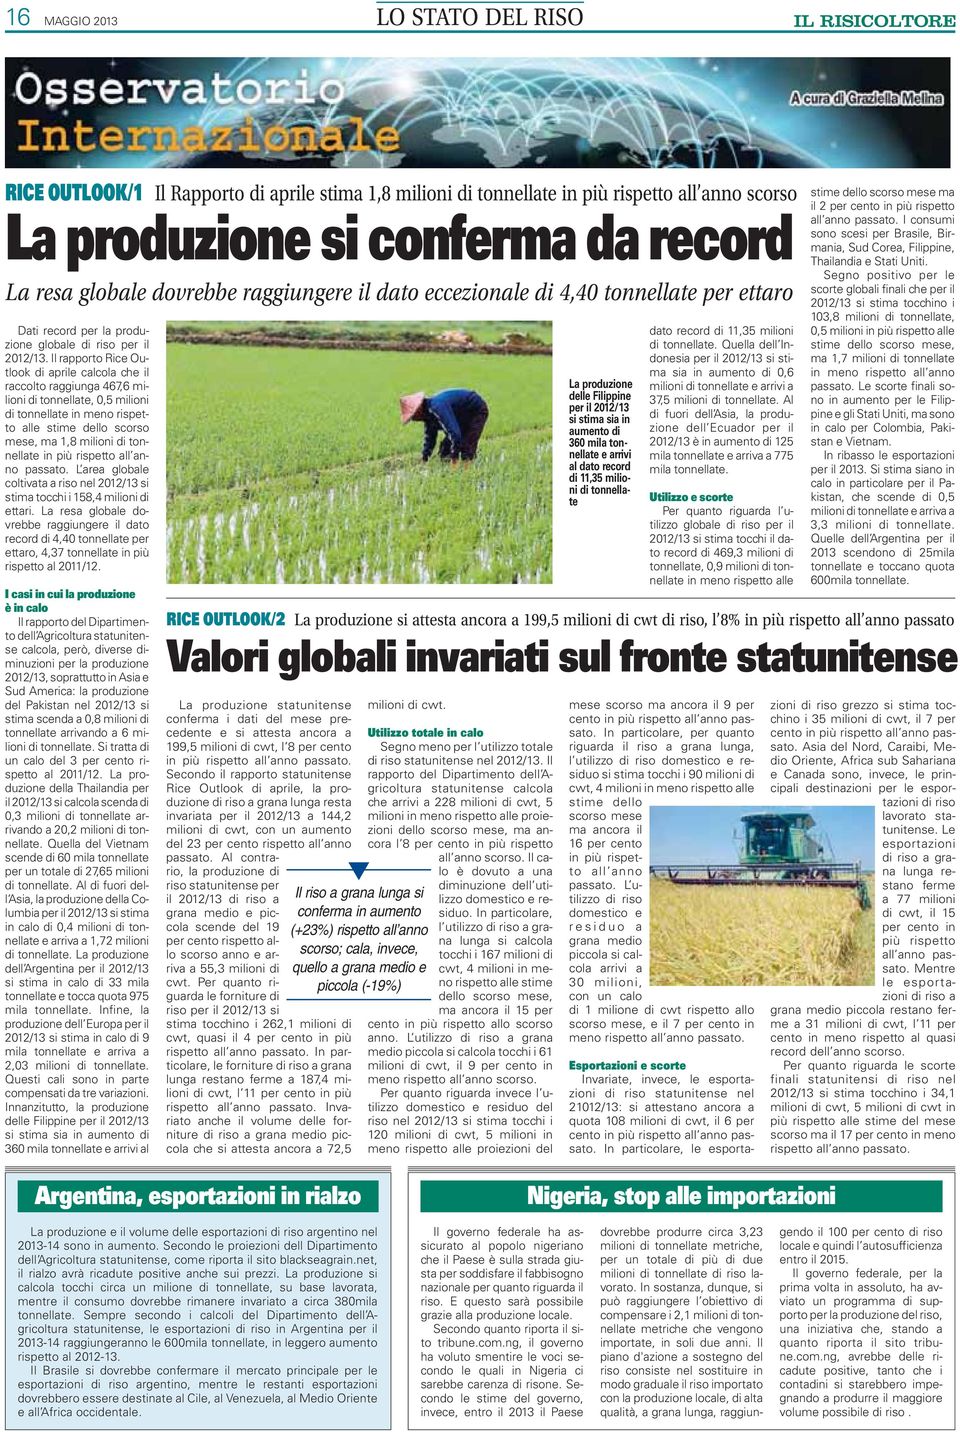 Il rapporto Rice Outlook di aprile calcola che il raccolto raggiunga 467,6 milioni di tonnellate, 0,5 milioni di tonnellate in meno rispetto alle stime dello scorso mese, ma 1,8 milioni di tonnellate